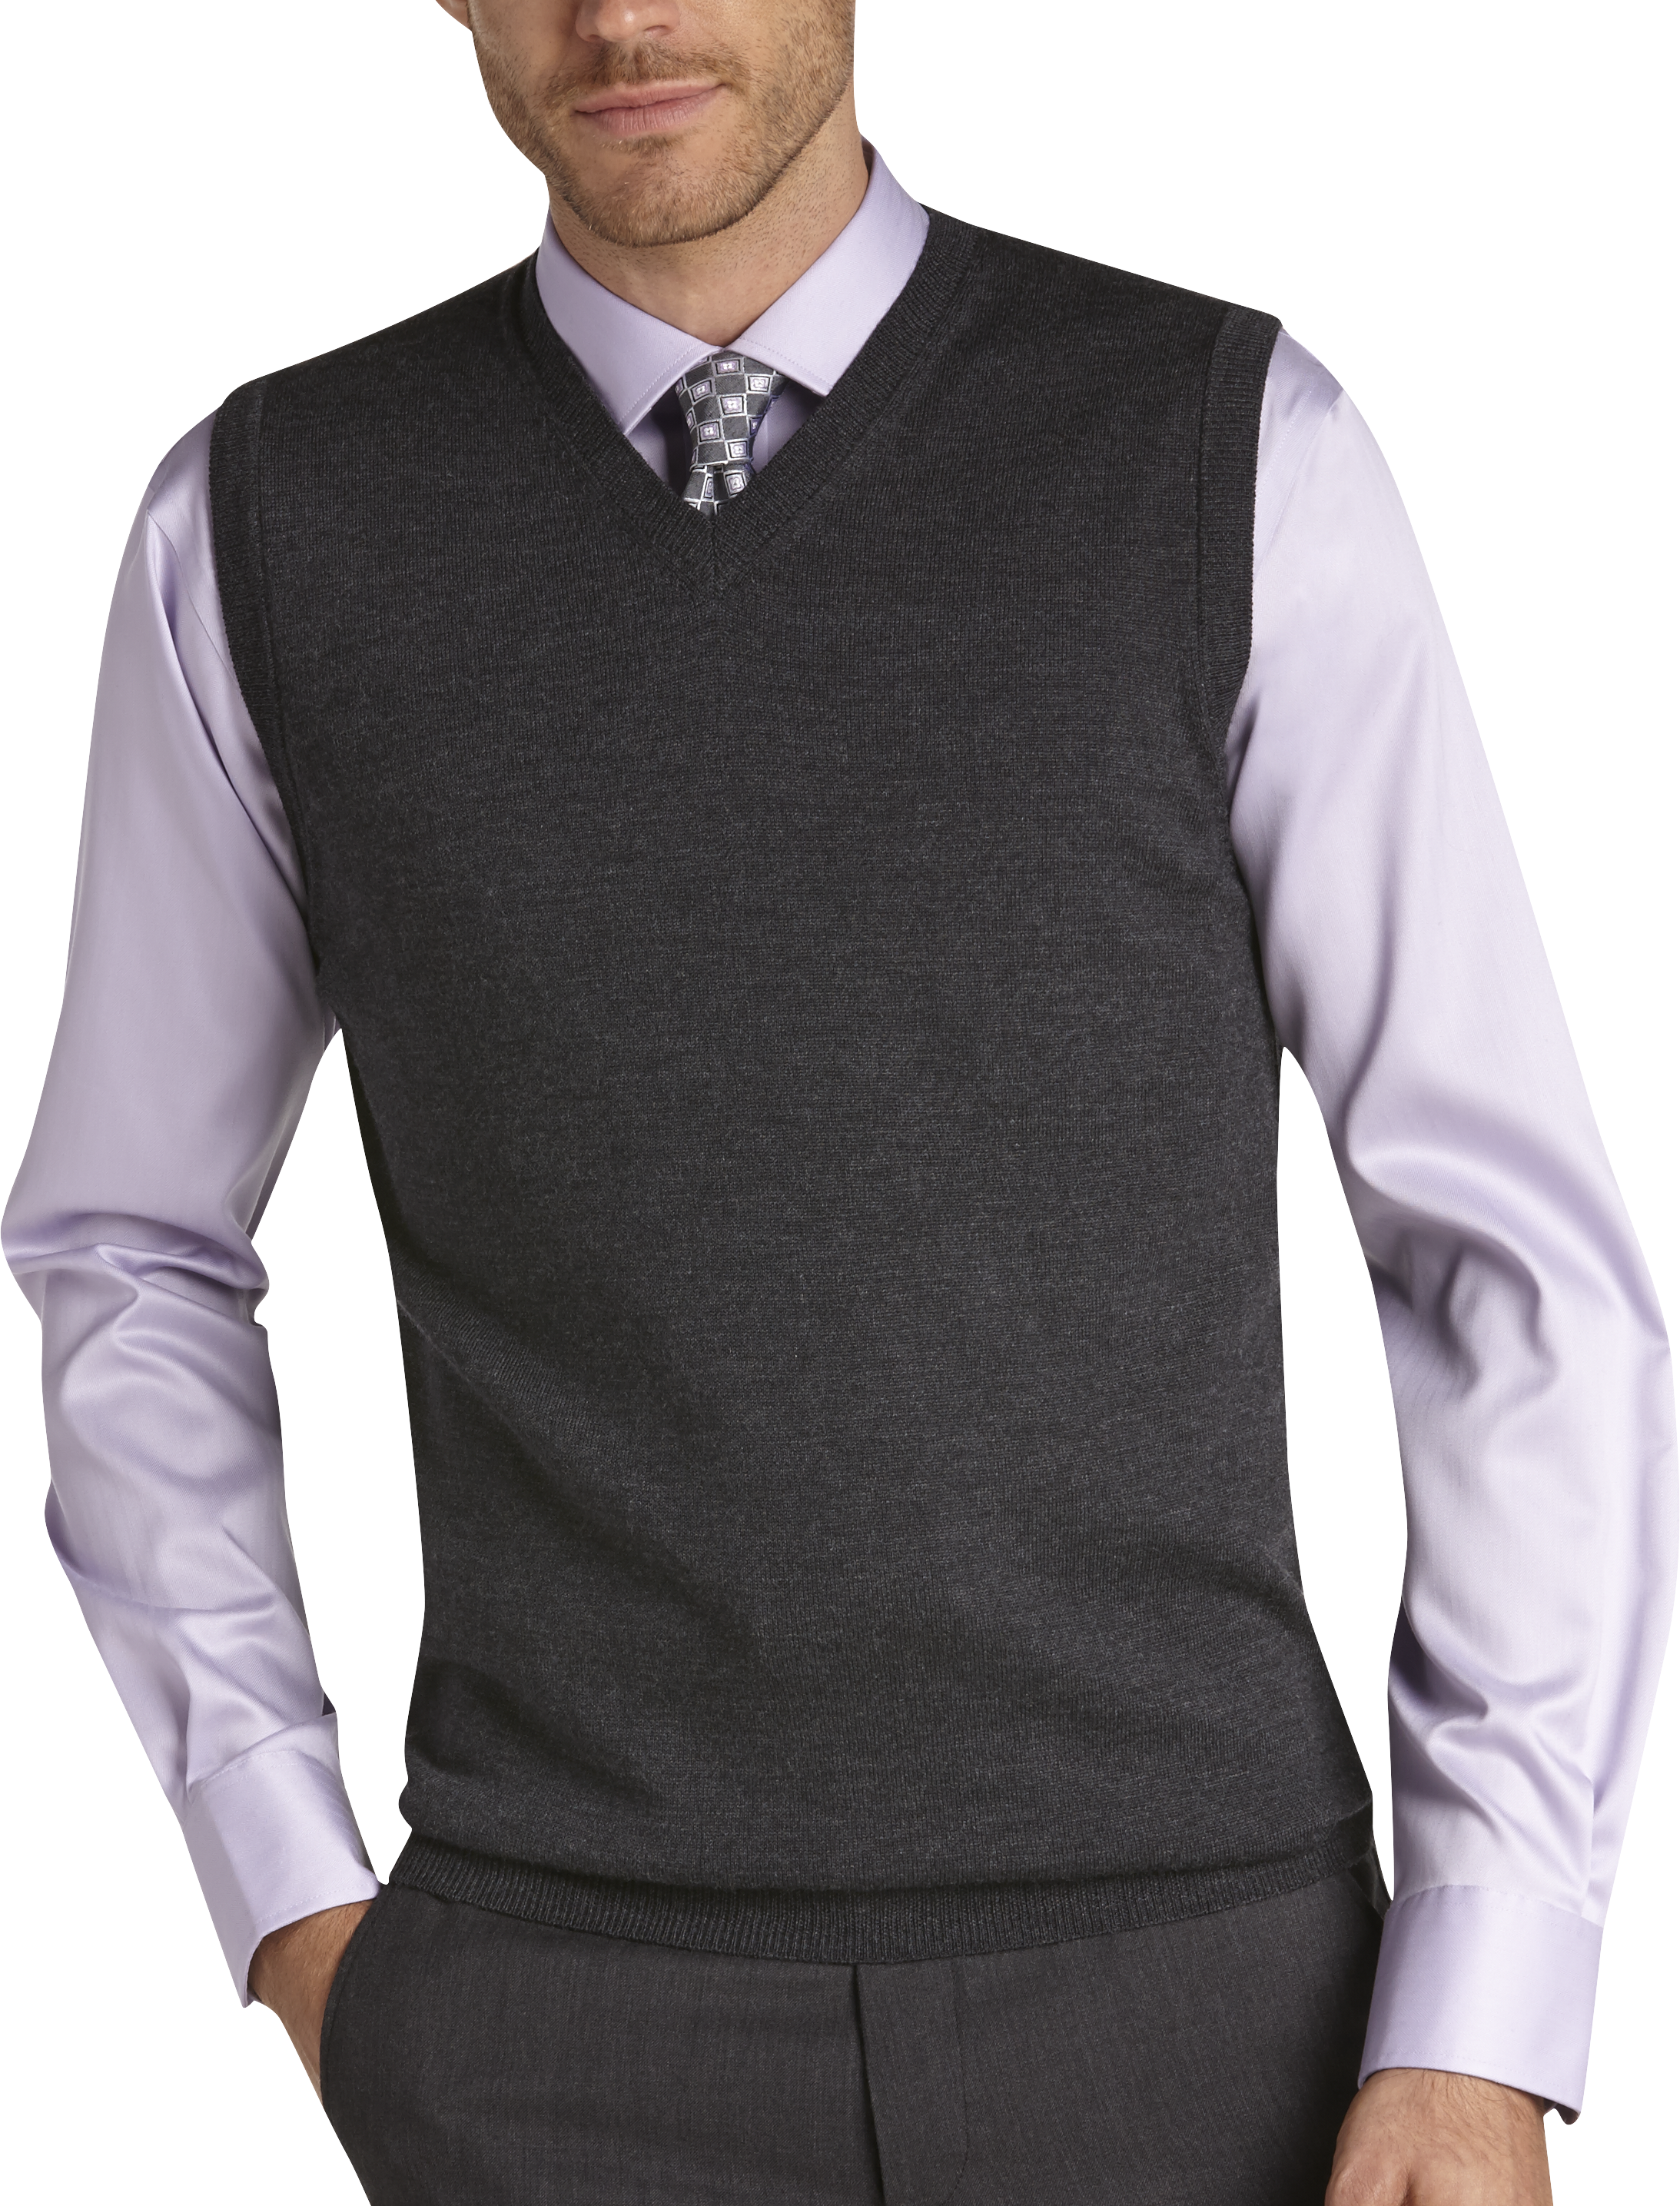 Joseph Abboud Charcoal Merino Vest - Men's Sweater Vests | Men's Wearhouse